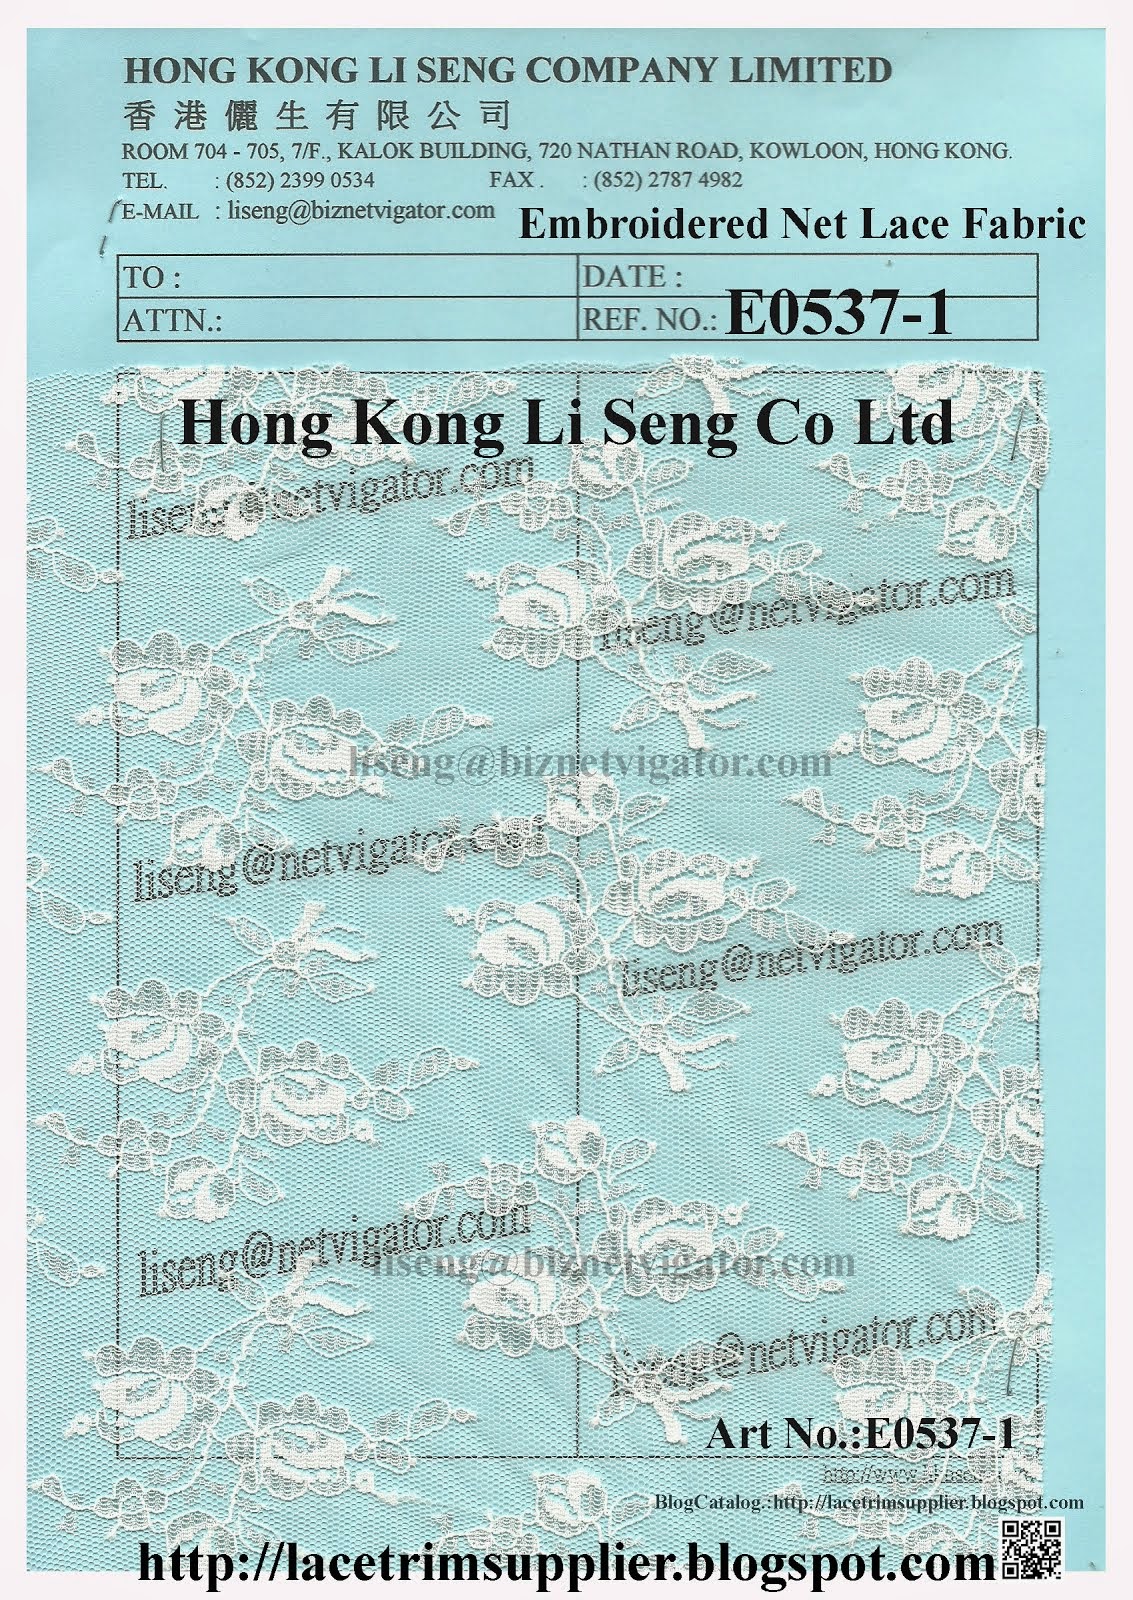 Embroidered Net Fabric Factory - Hong Kong Li Seng Co Ltd